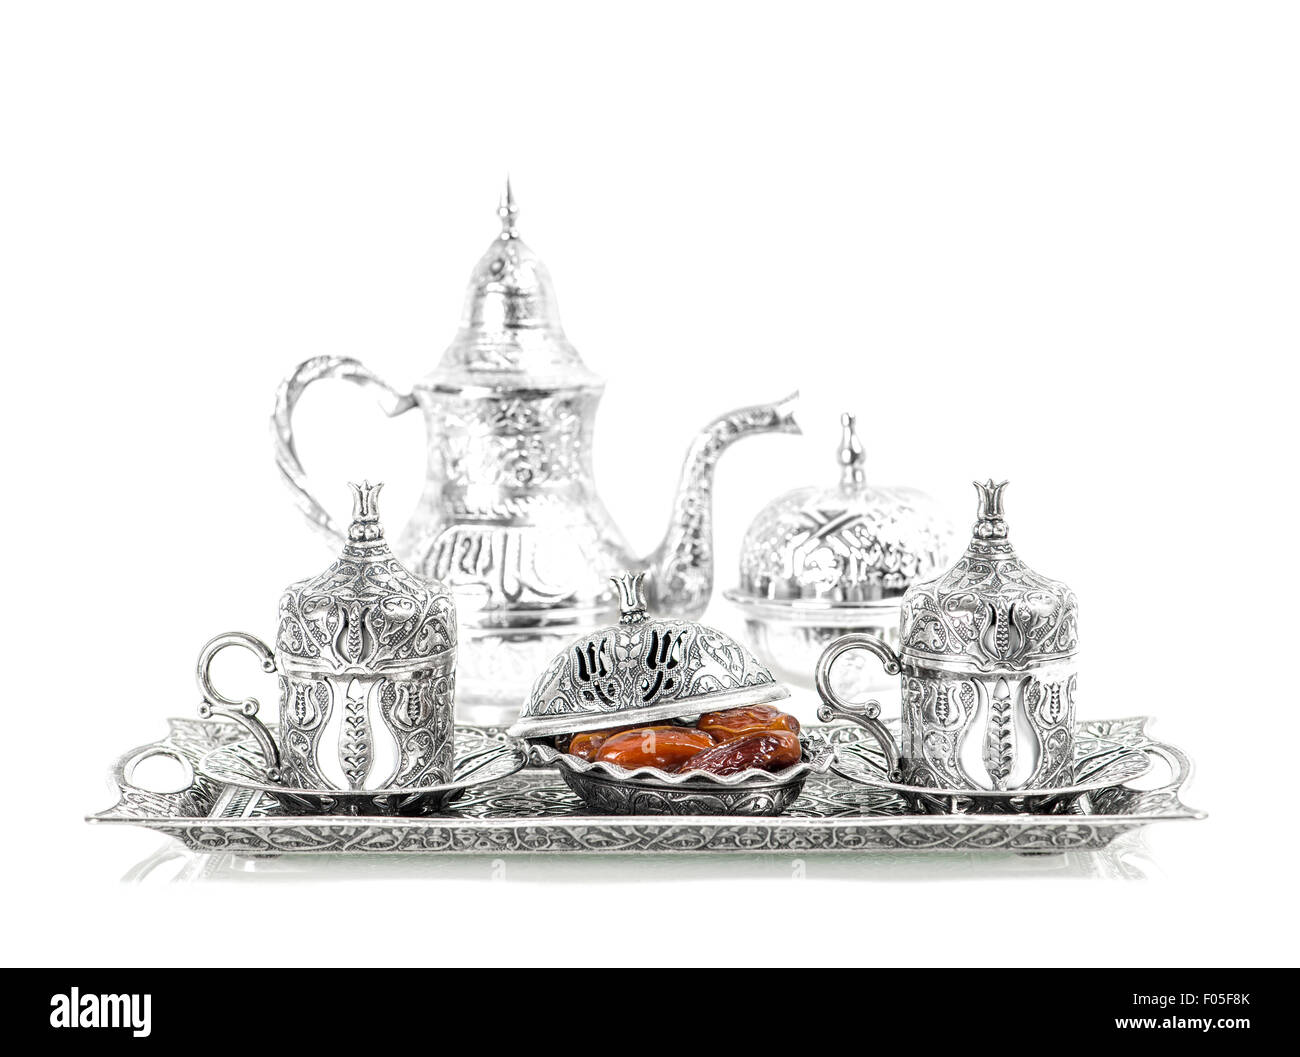 Tafelsilber und Termine. Orientalische Gastfreundschaft Konzept mit Tee oder Kaffee Tassen Stockfoto